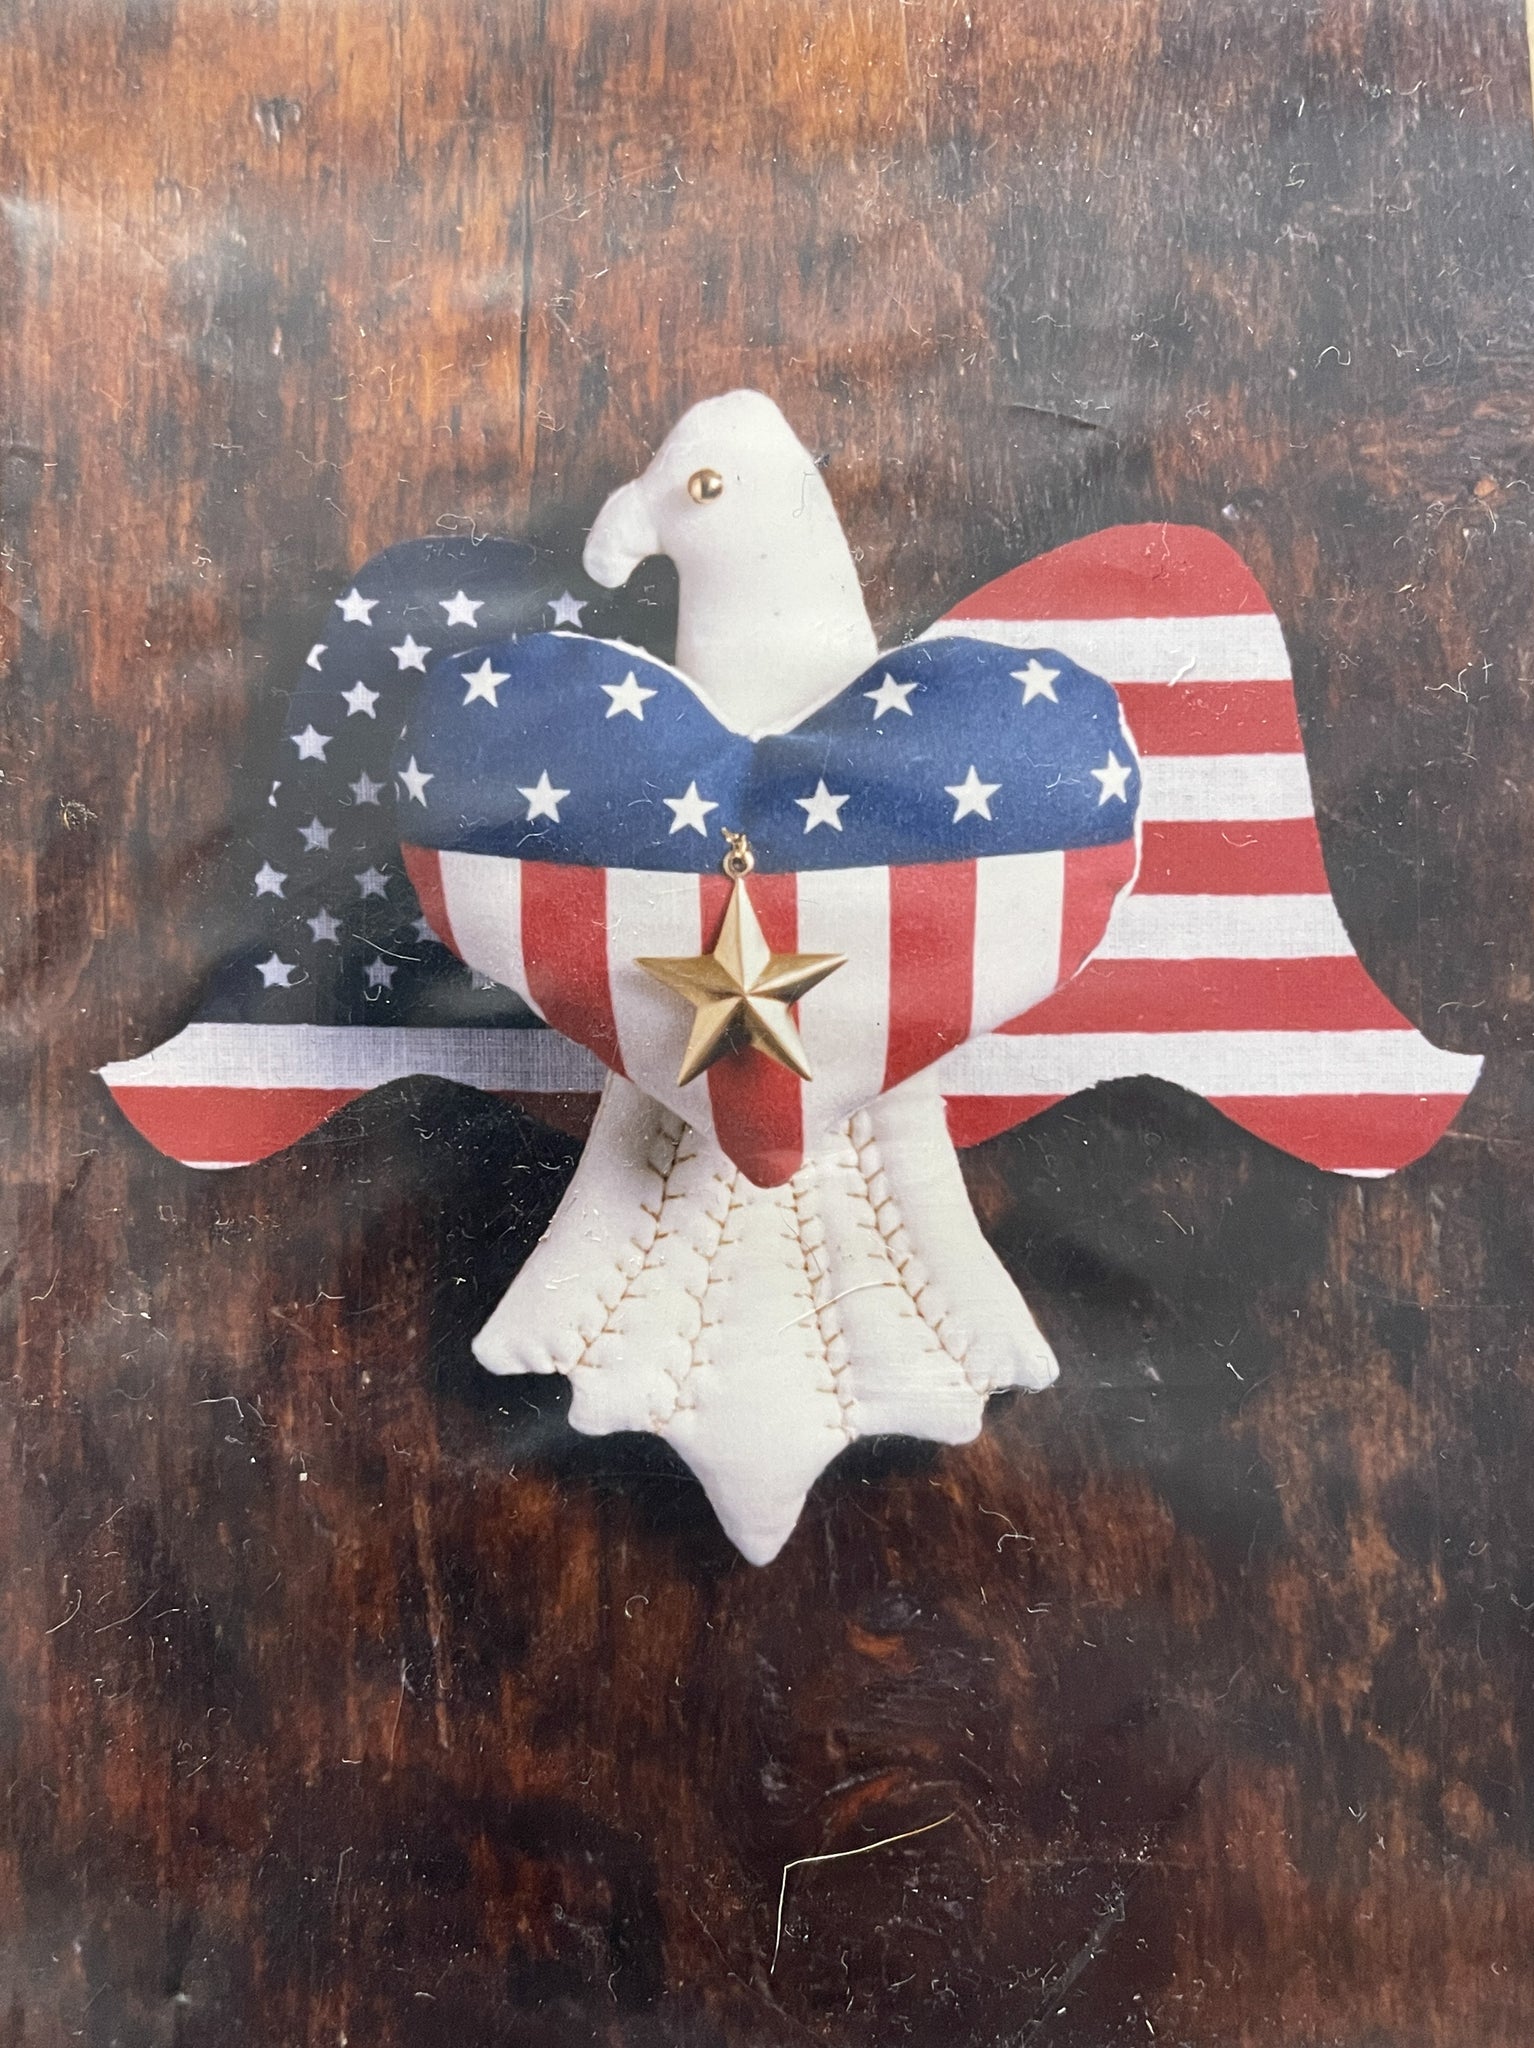 SALE Patriotic Ornament Kit - "Sam"